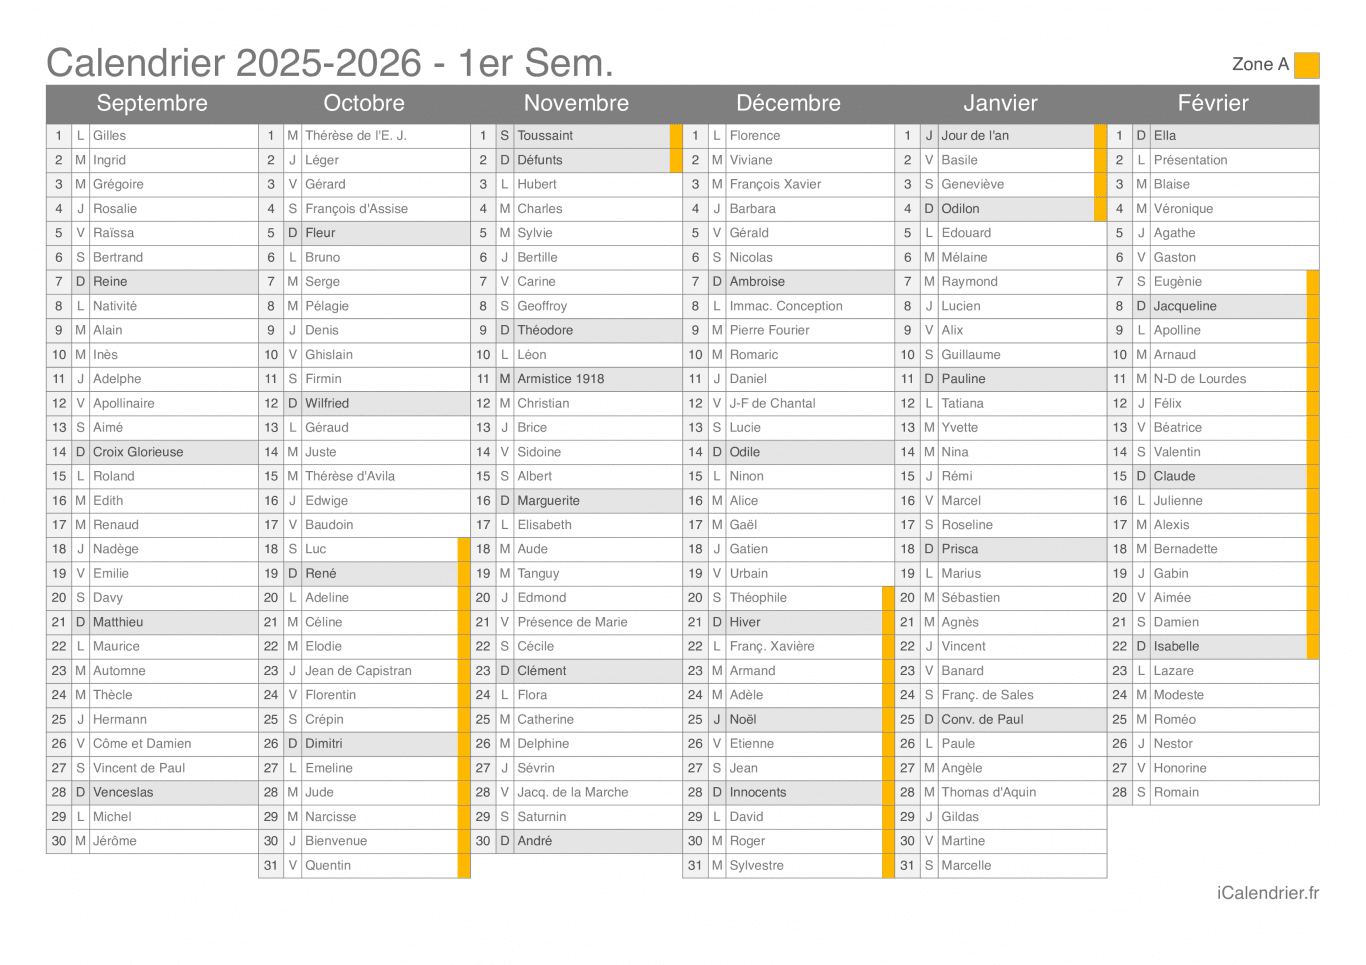 Calendrier des vacances scolaires 2025-2026 par semestre, zone A, avec fête du jour